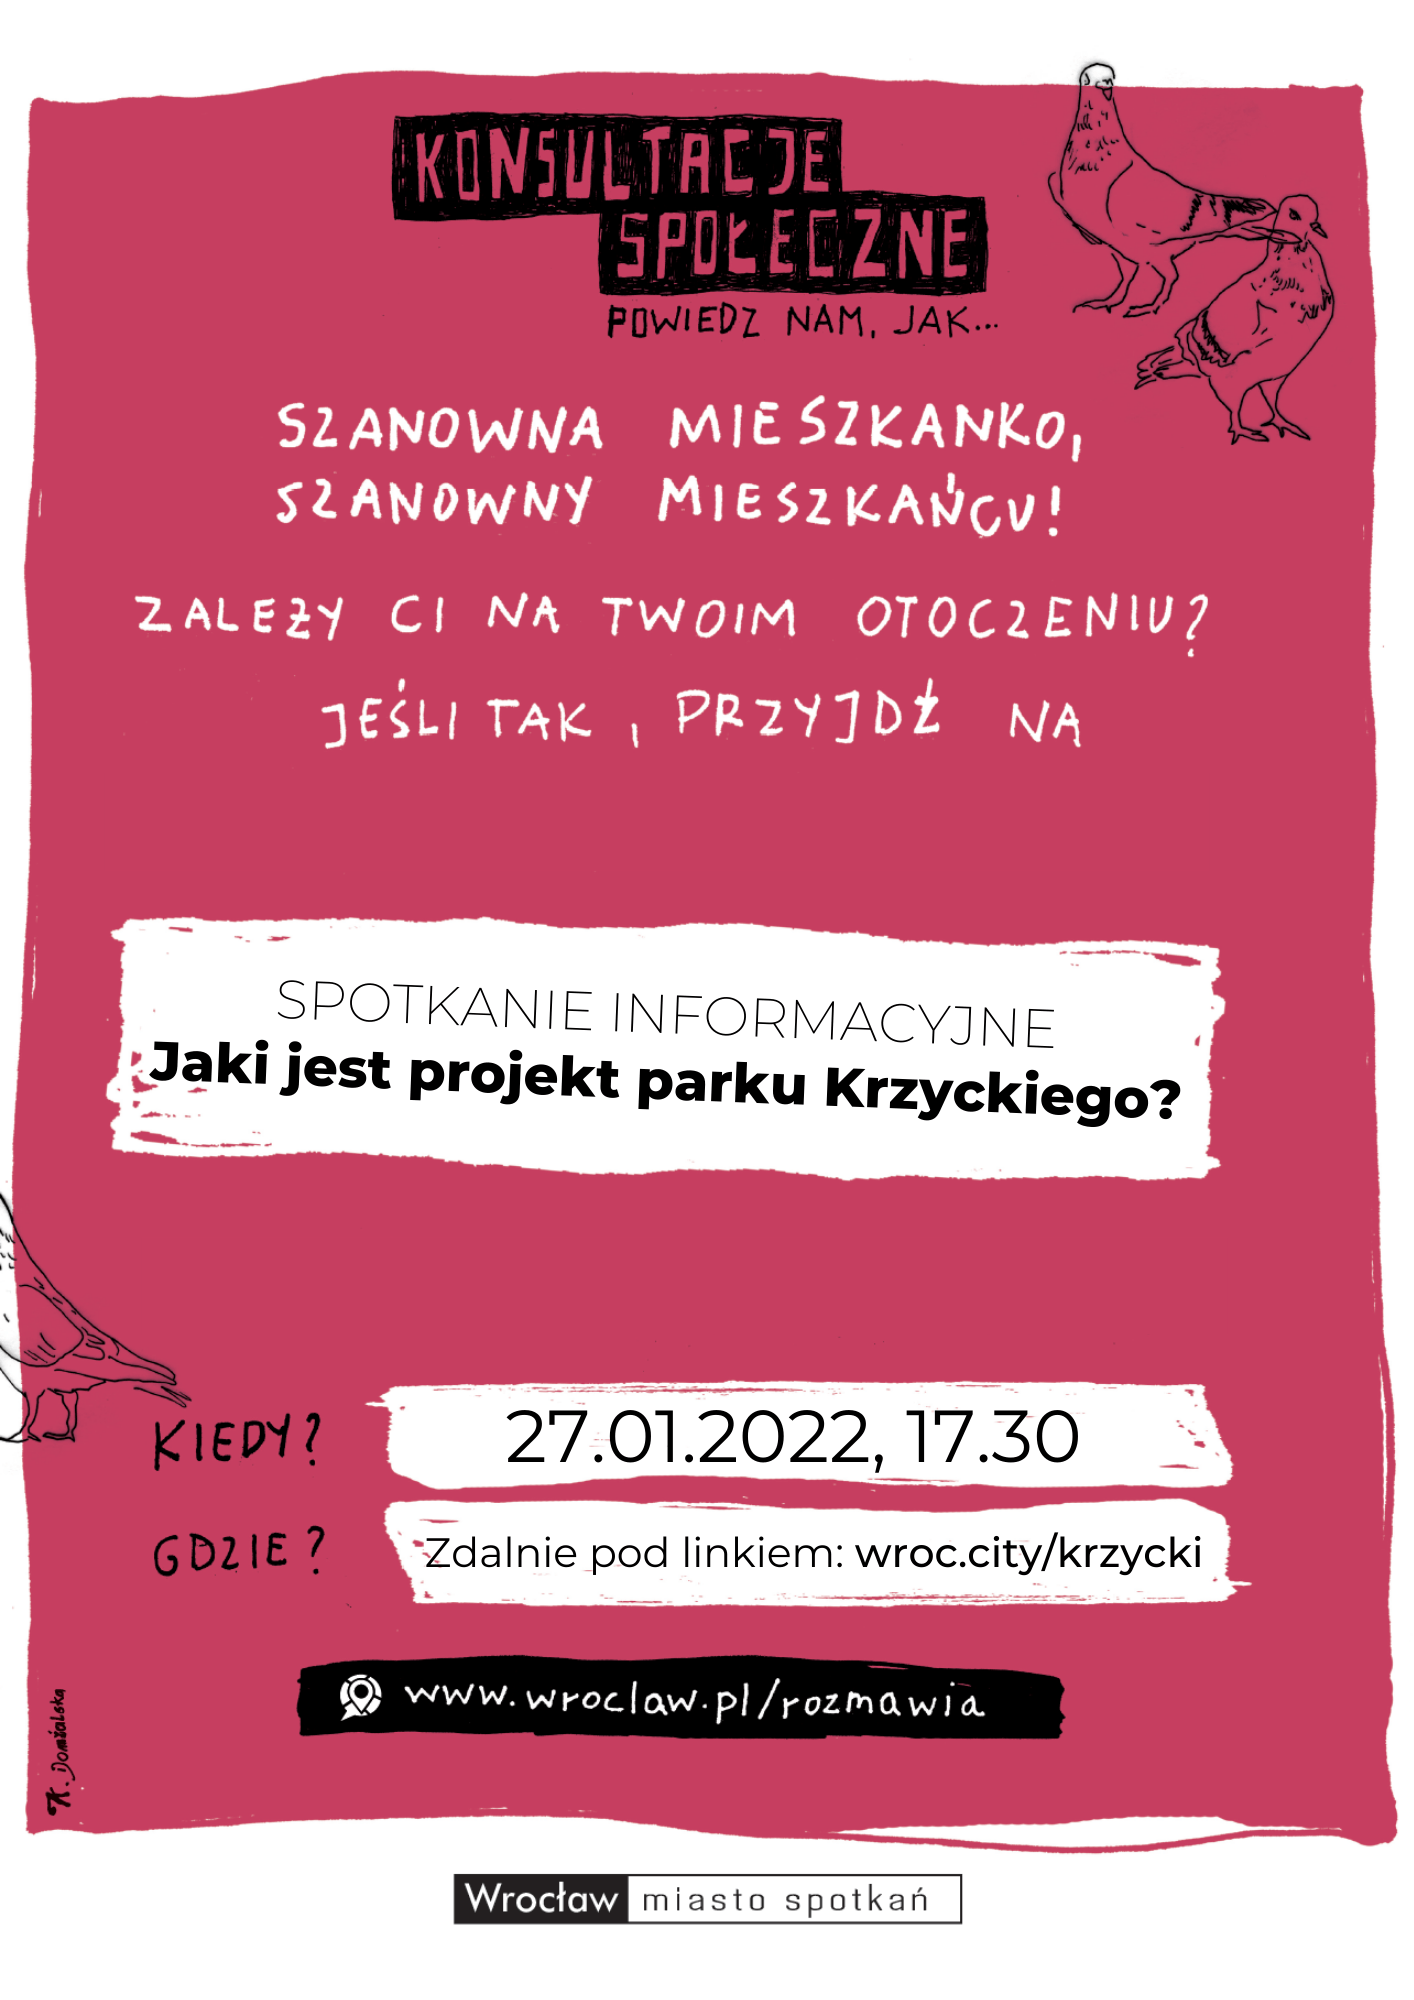 Plakat informujący o spotkaniu konsultacyjnym w sprawie projektu parku Krzyckiego. Na plakacie podano datę, godzinę oraz link do spotkania online.